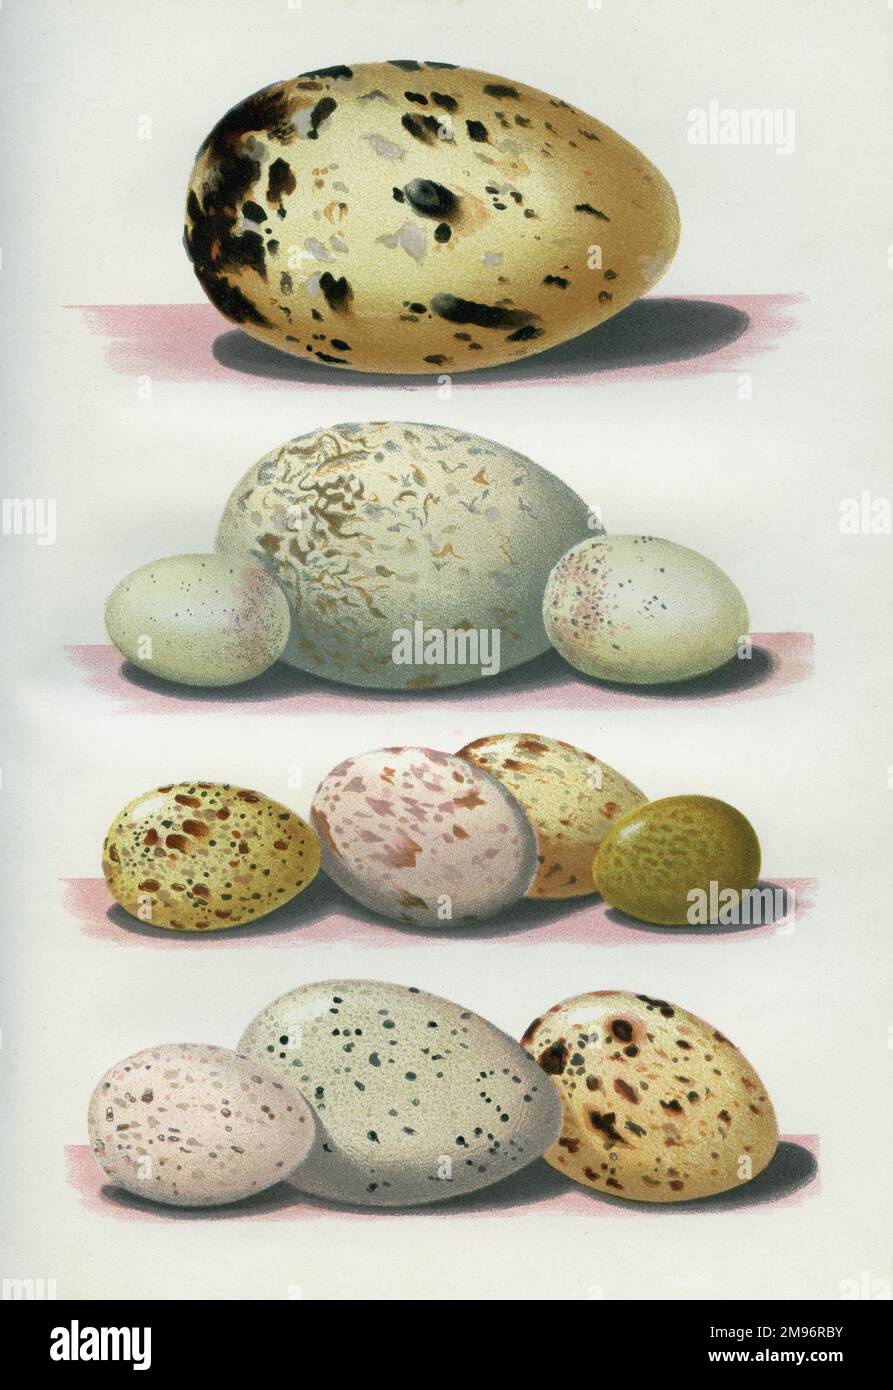 Die Eier britischer Vögel -- gemischte Eier in verschiedenen Farben und Größen. Stockfoto